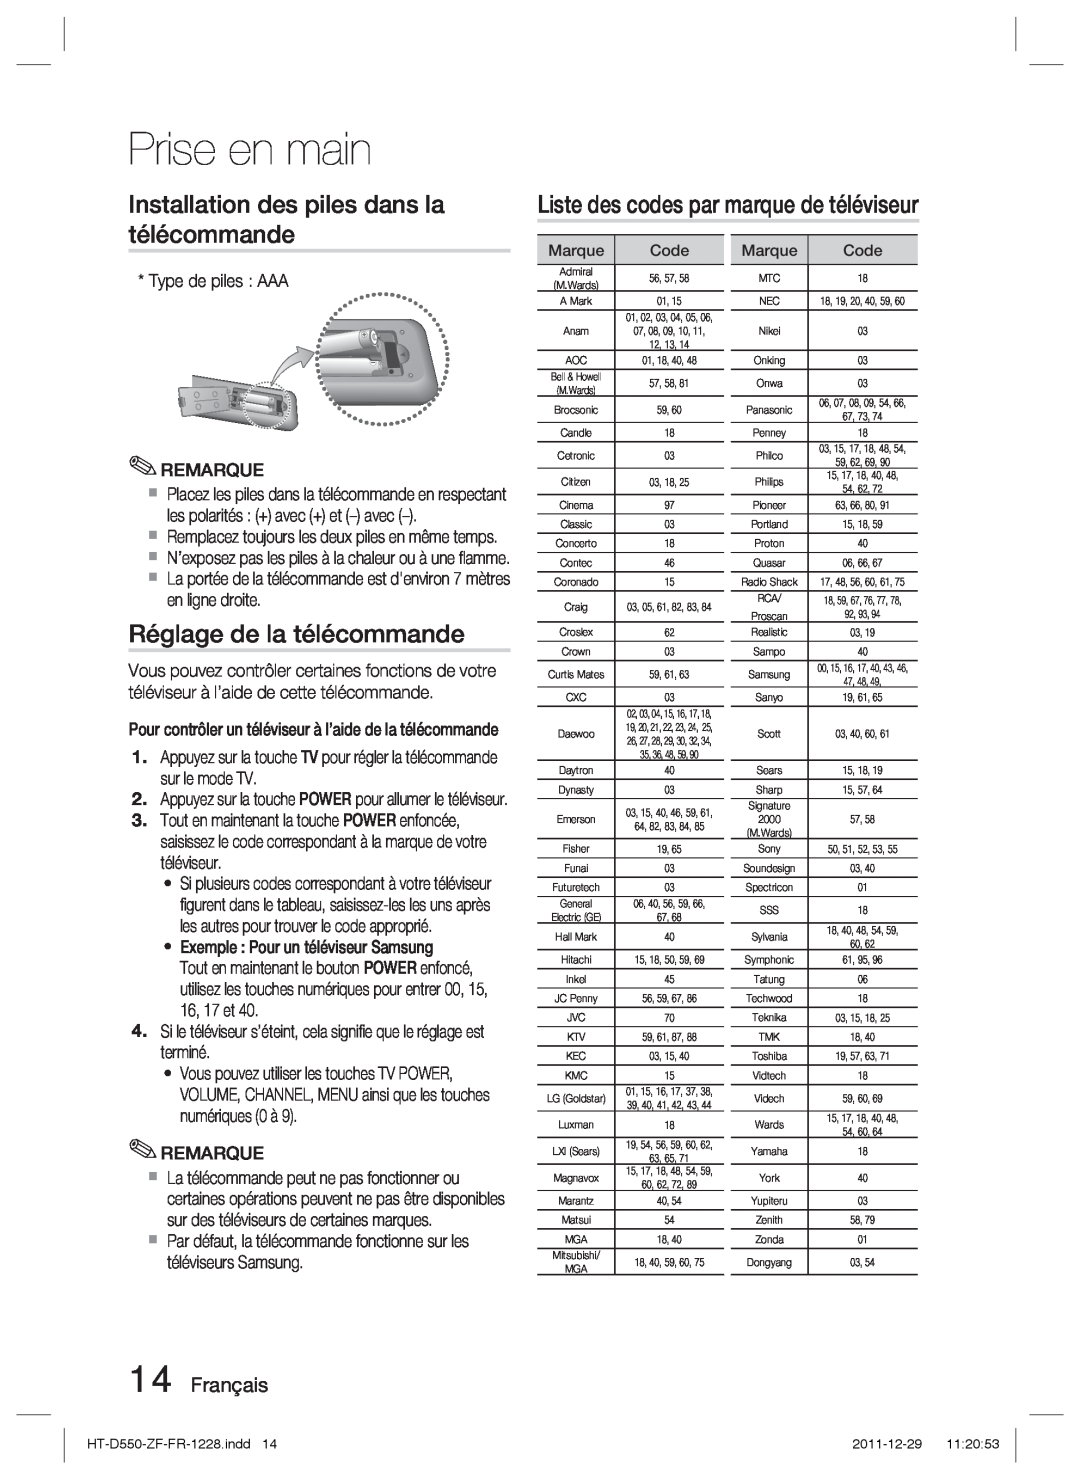 Samsung HT-D555/EN manual Installation des piles dans la télécommande, Liste des codes par marque de téléviseur, Français 